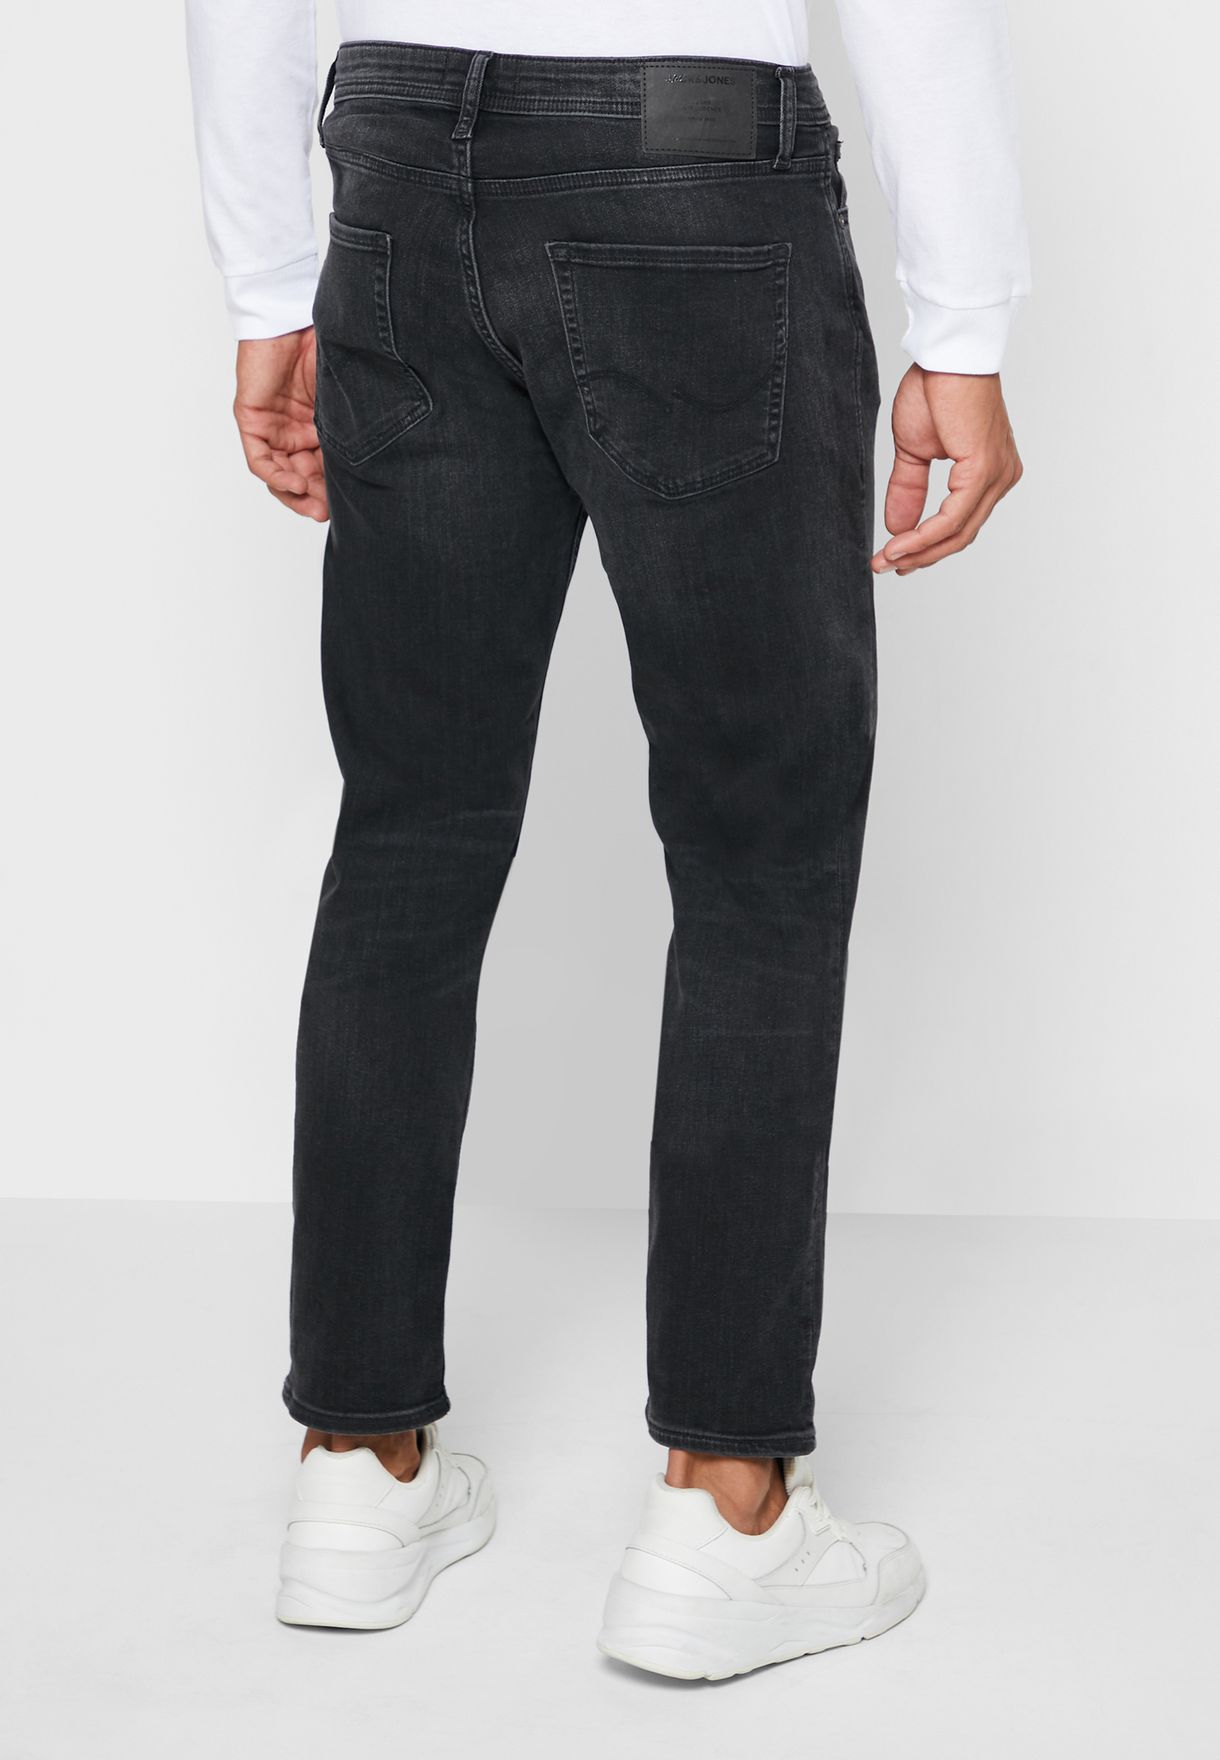 Jack & Jones Men's Slim Fit Jeans Trousers Tim Original in 2 Colors 